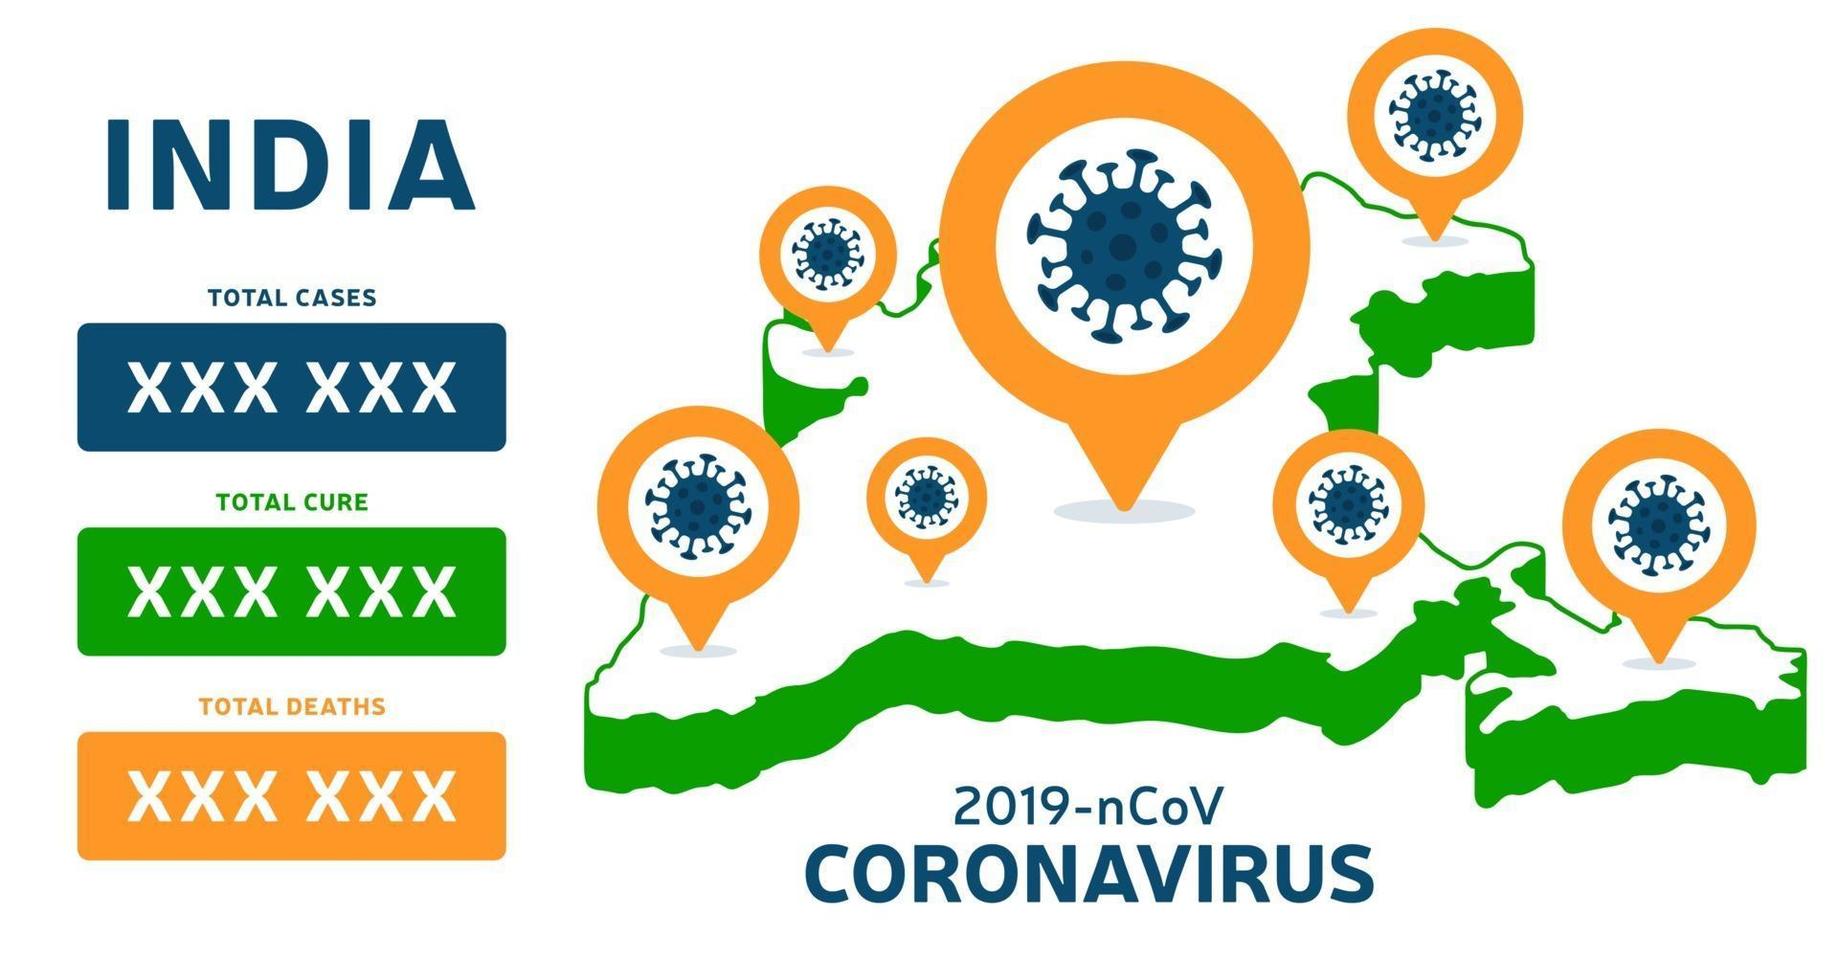 Indien karta coronavirus banner. covid-19, covid 19 isometrisk indisk karta bekräftade fall, bot, dödsrapport. coronavirus sjukdom 2019 situation uppdatering Indien. kartor visar situation och statistik vektor